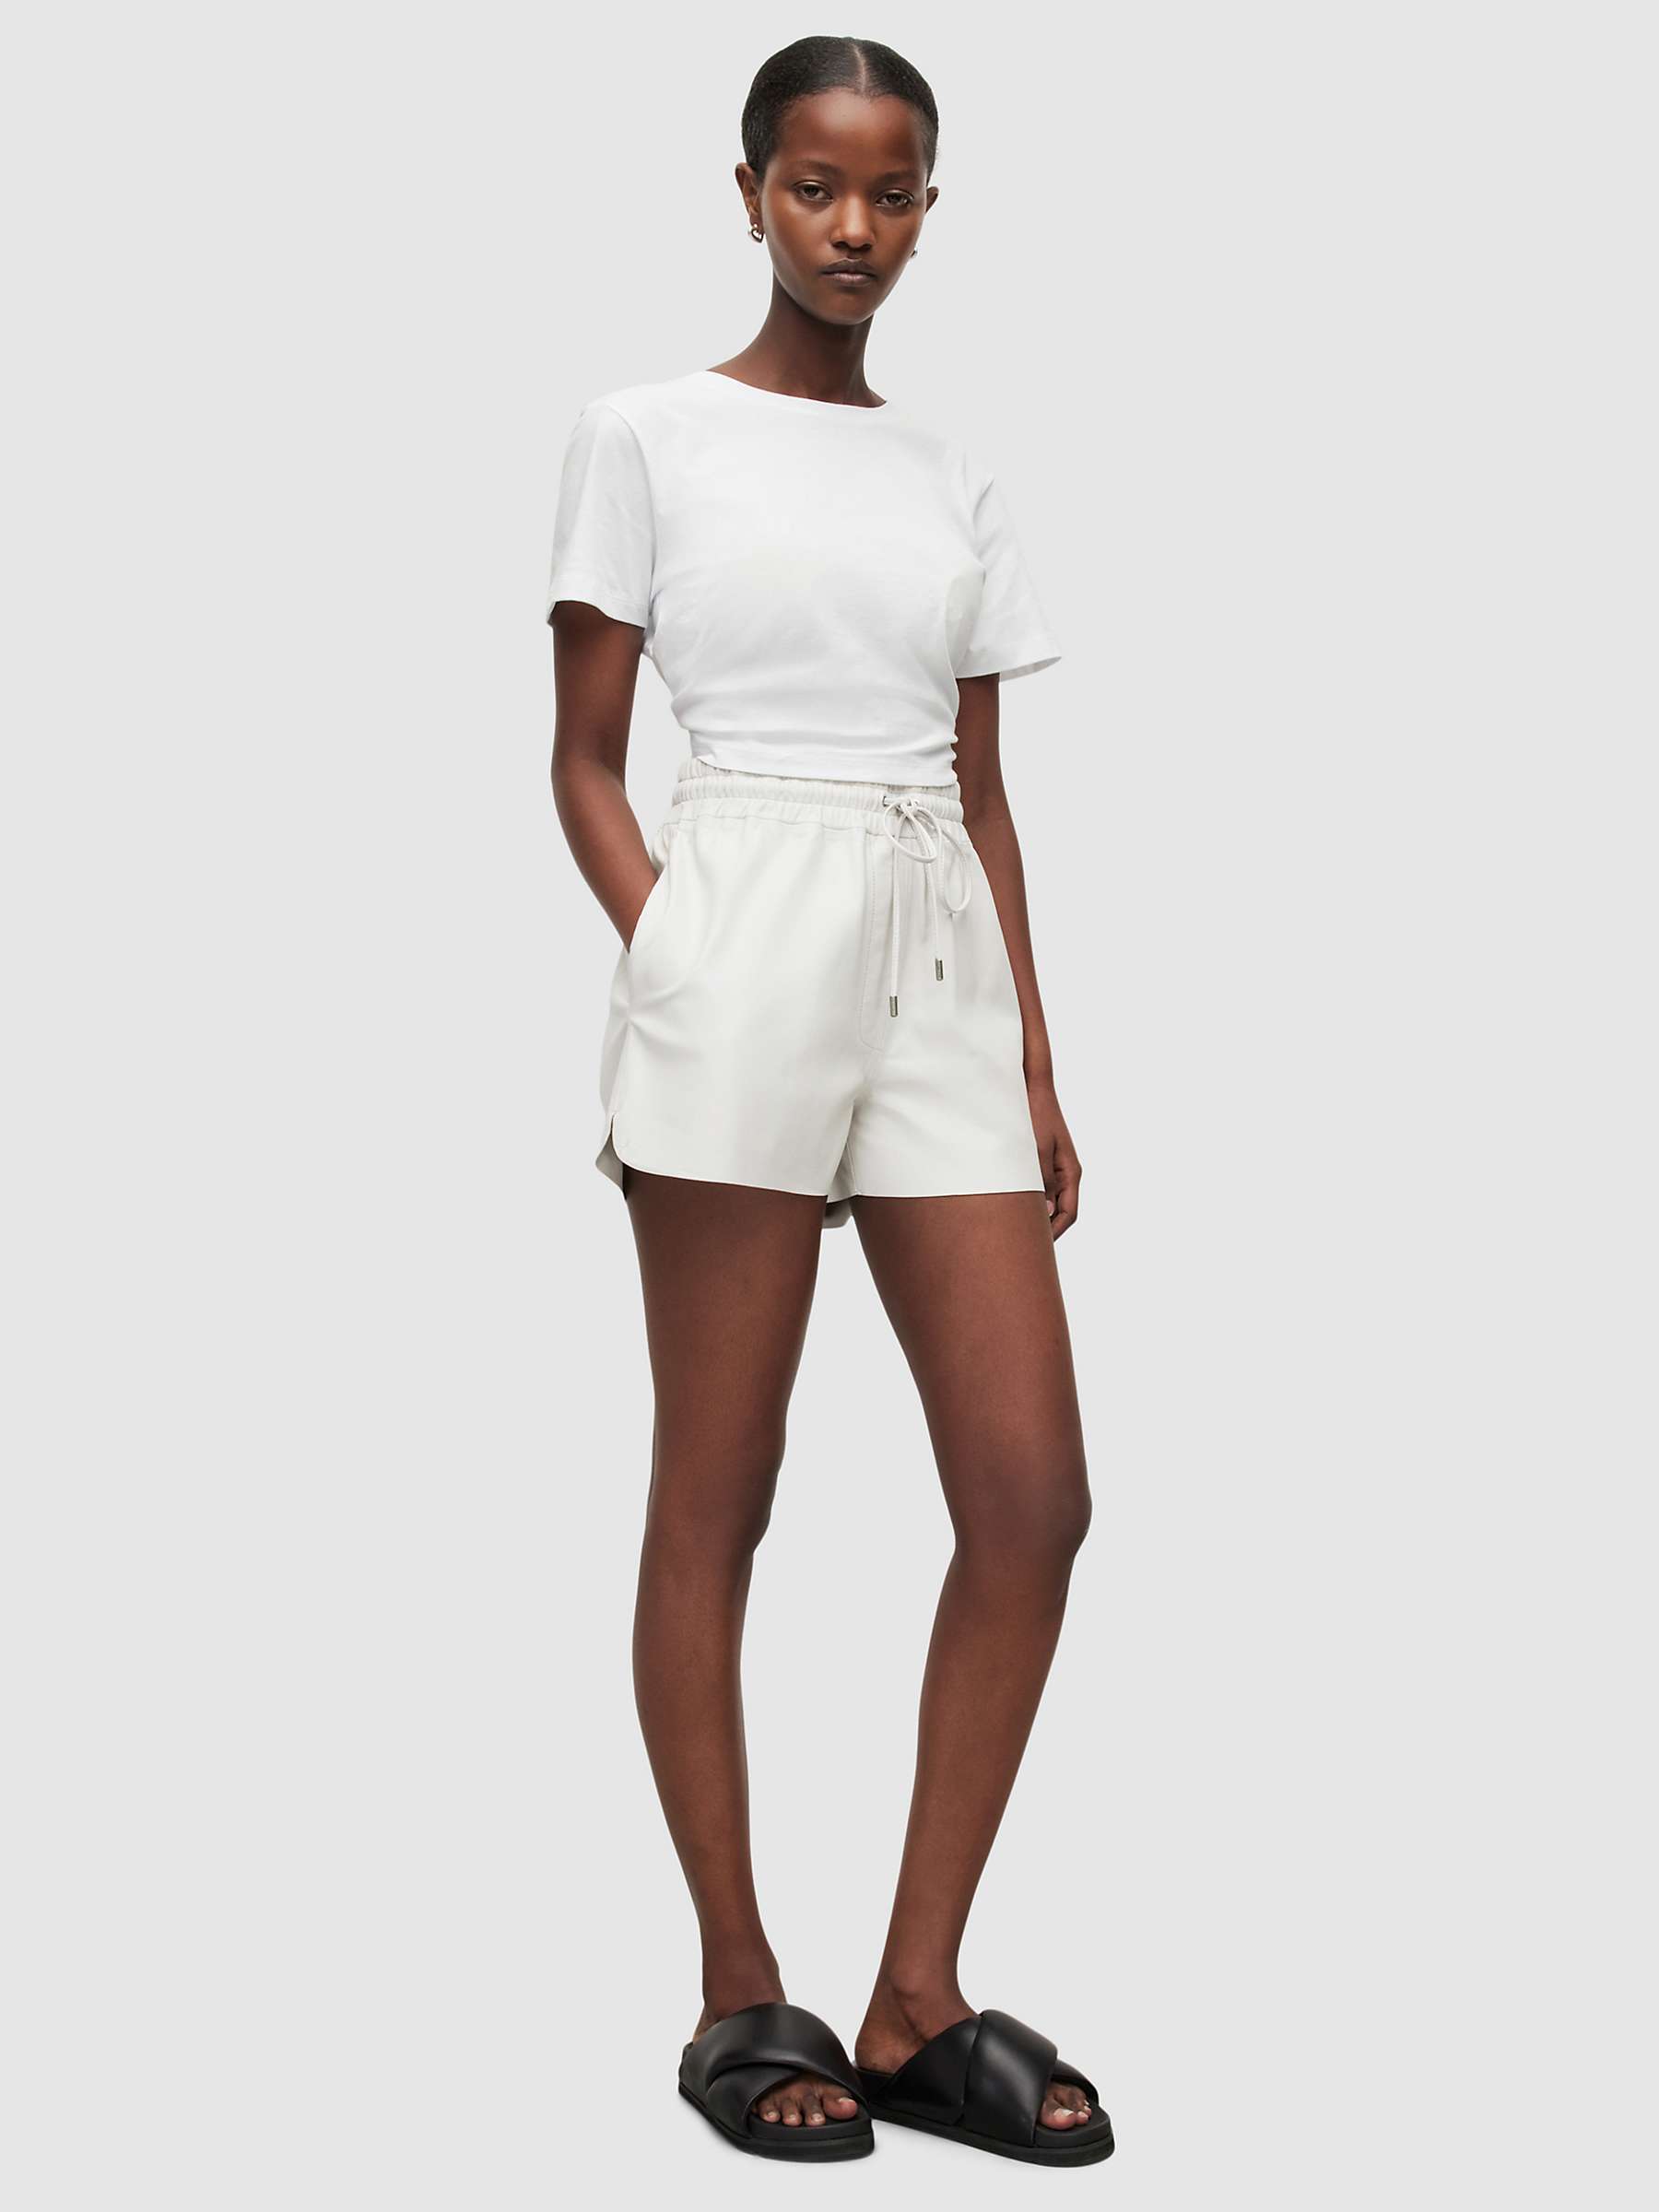 Indsigt fremstille karakterisere AllSaints Shana Leather Shorts, White at John Lewis & Partners